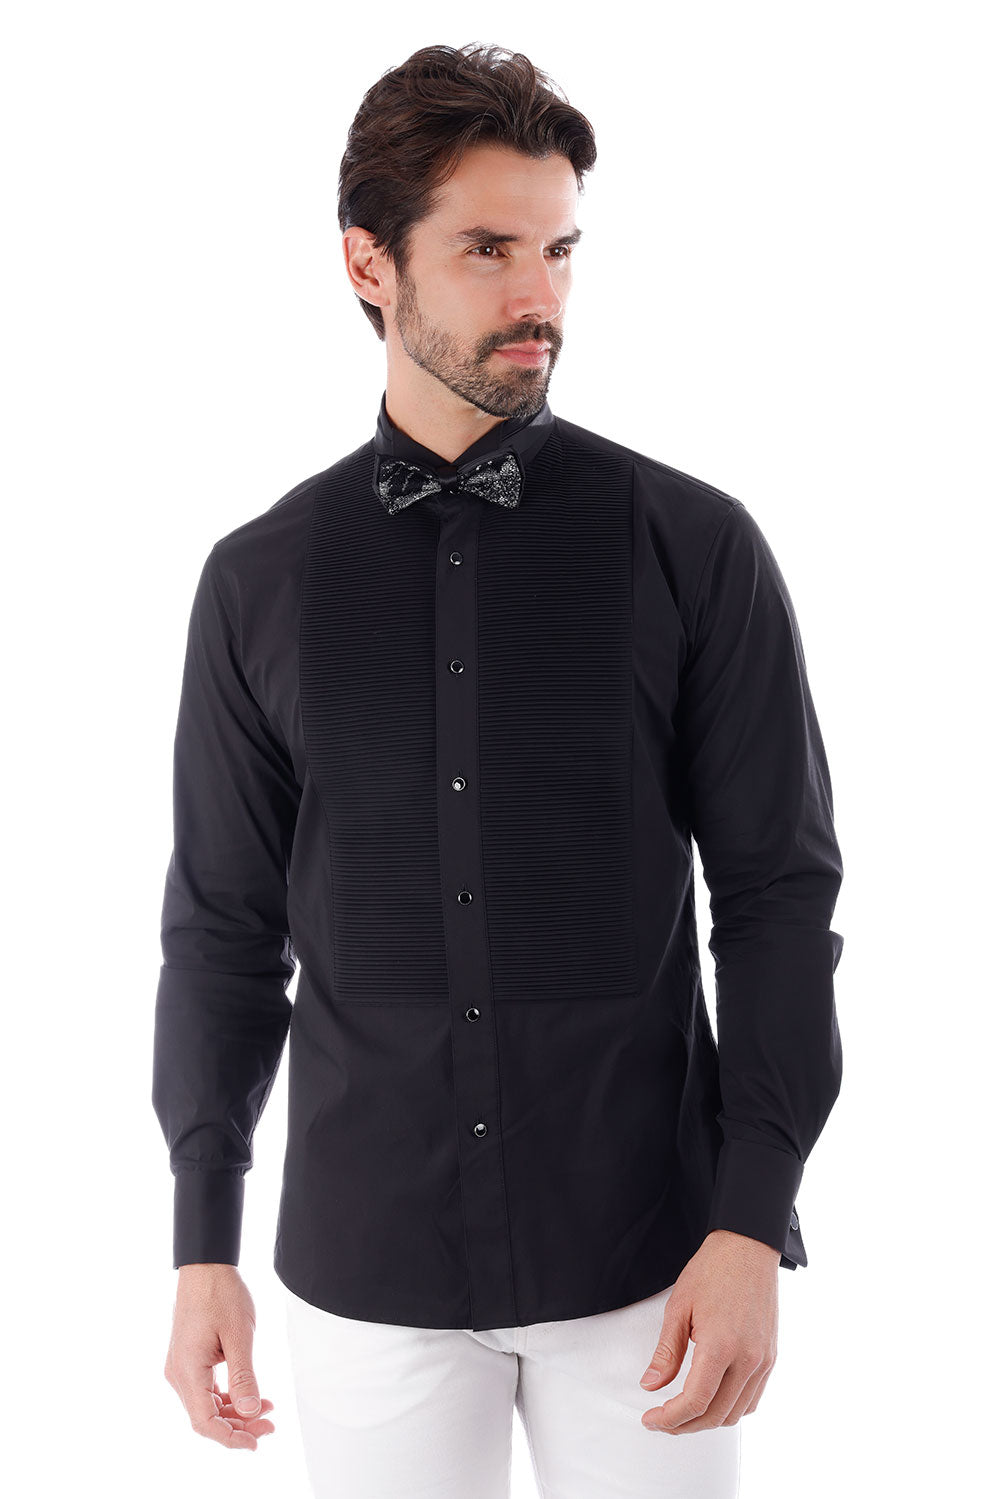 BARABAS Men's Solid Color Tuxedo Button Down Long Sleeve Shirt 4txs01 Black